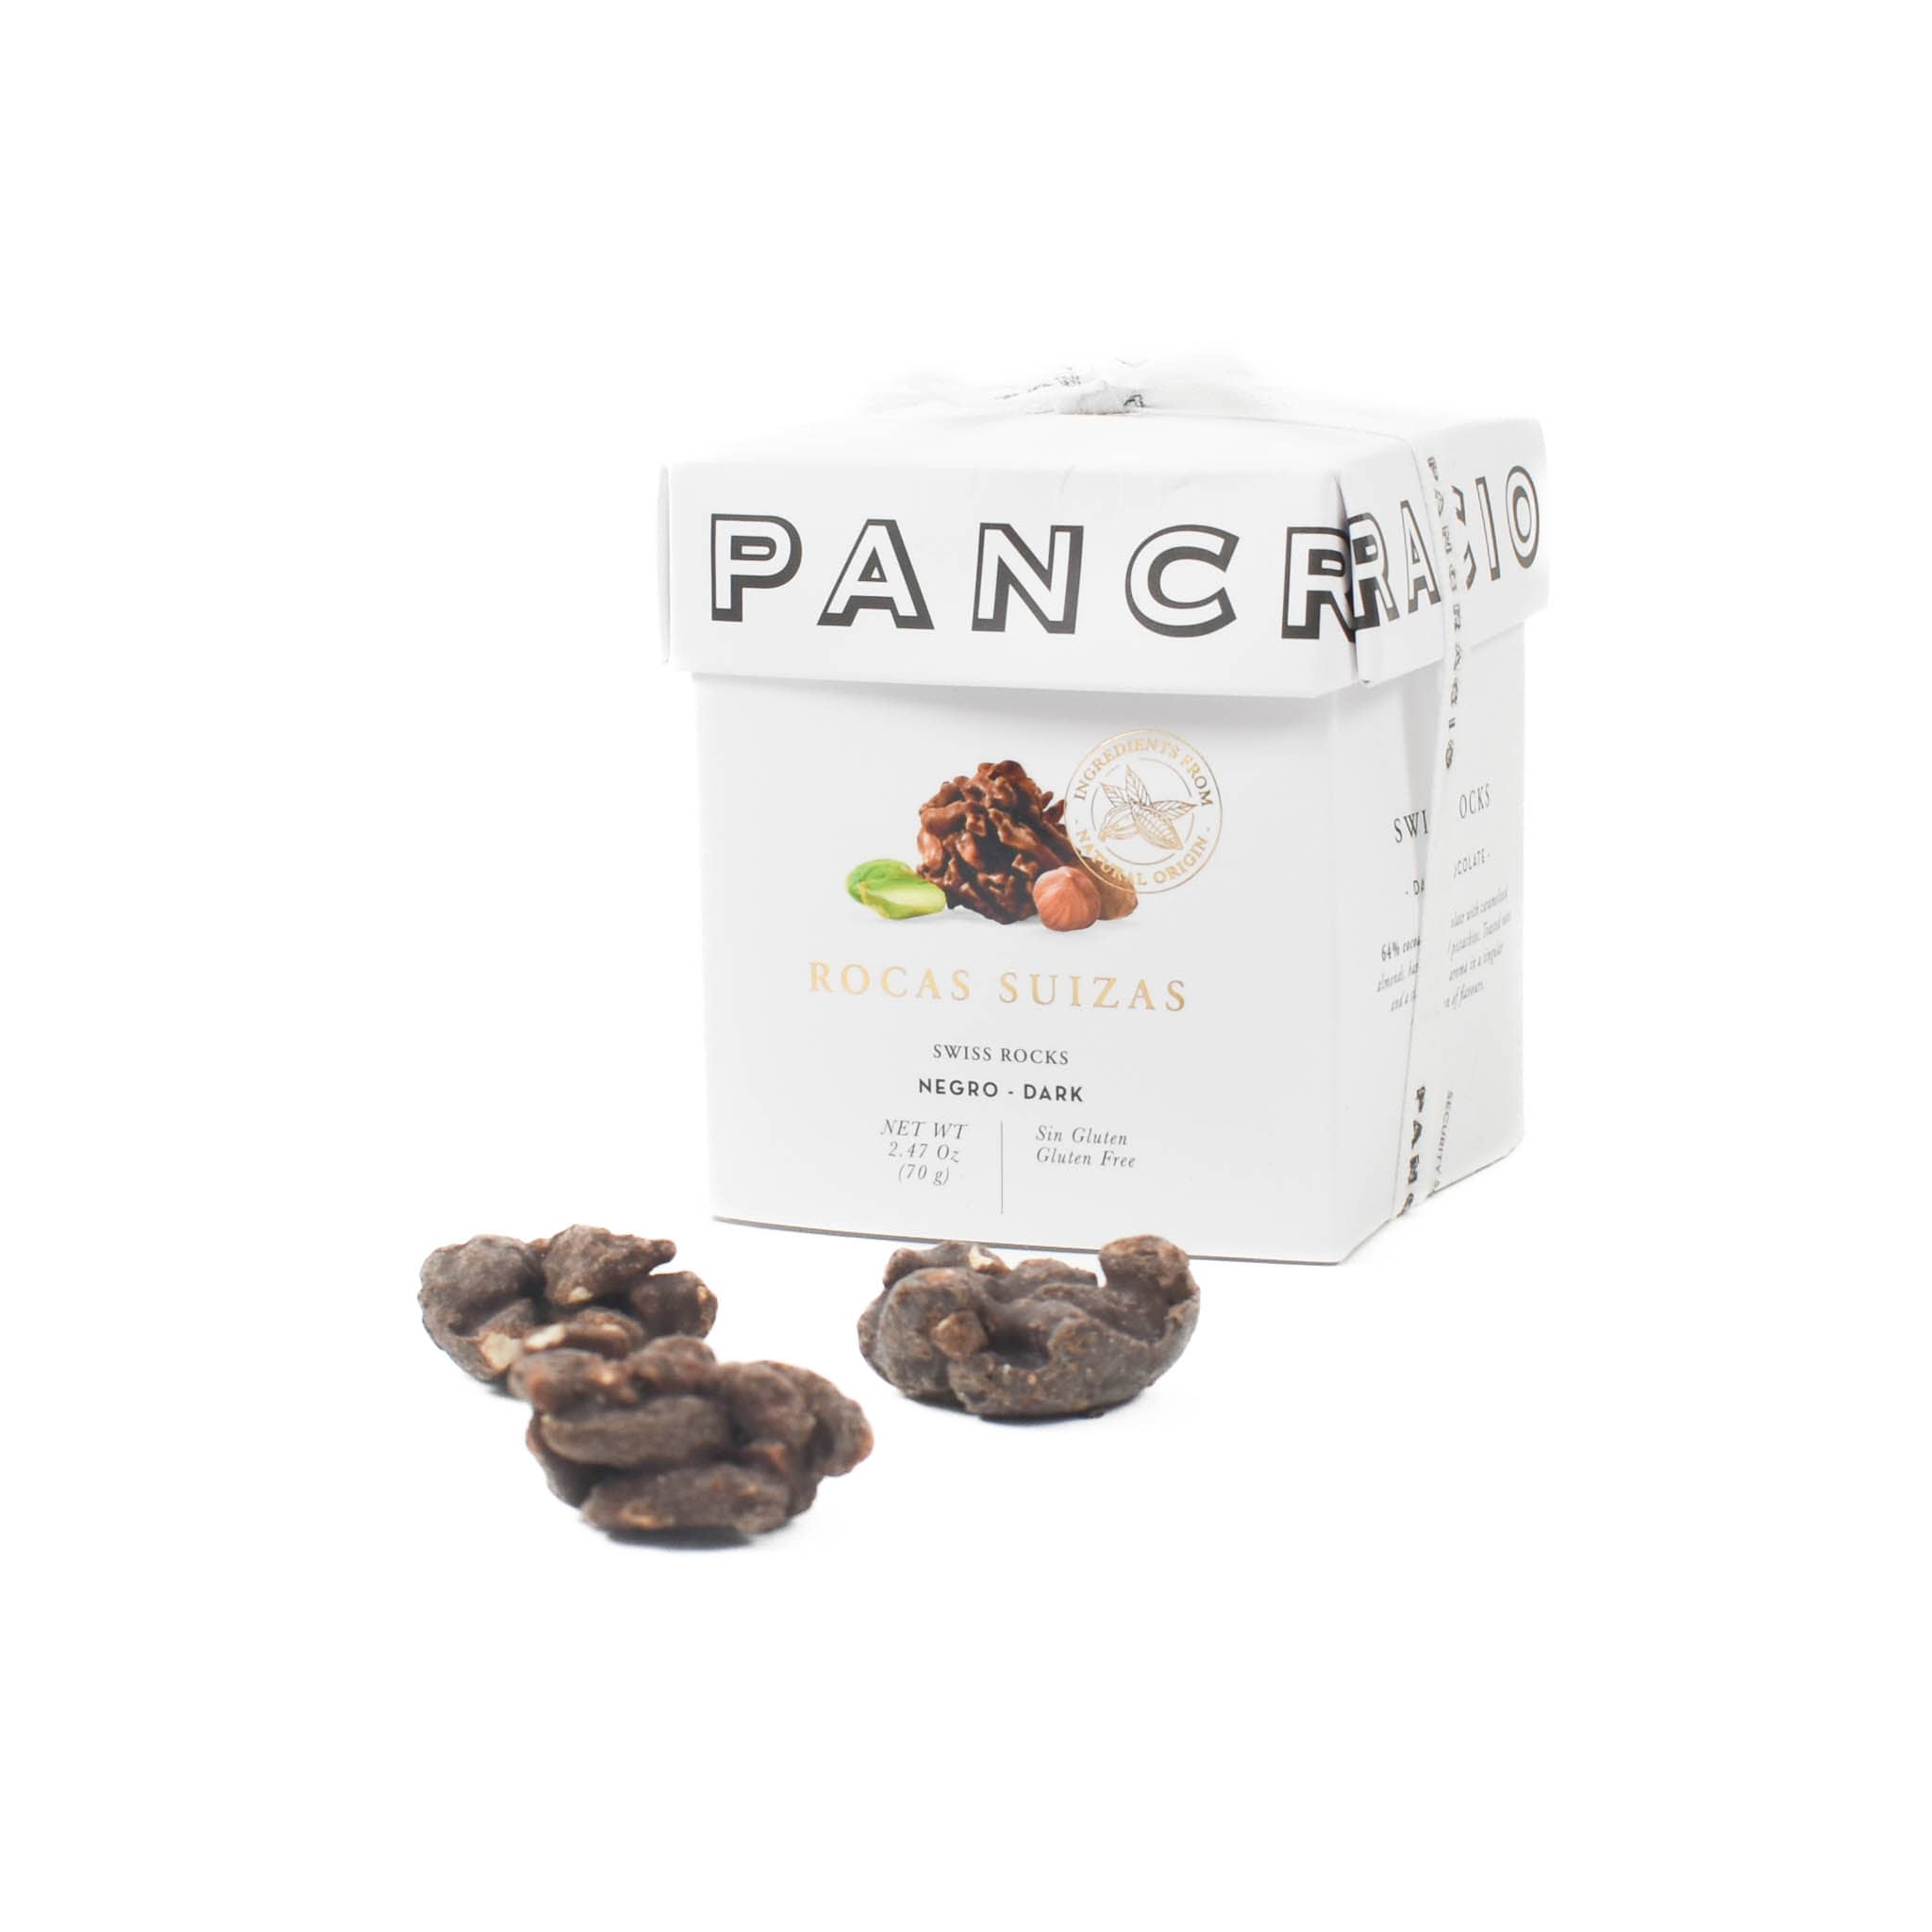 Pancracio Swiss Rocks Dark Chocolate, 70g